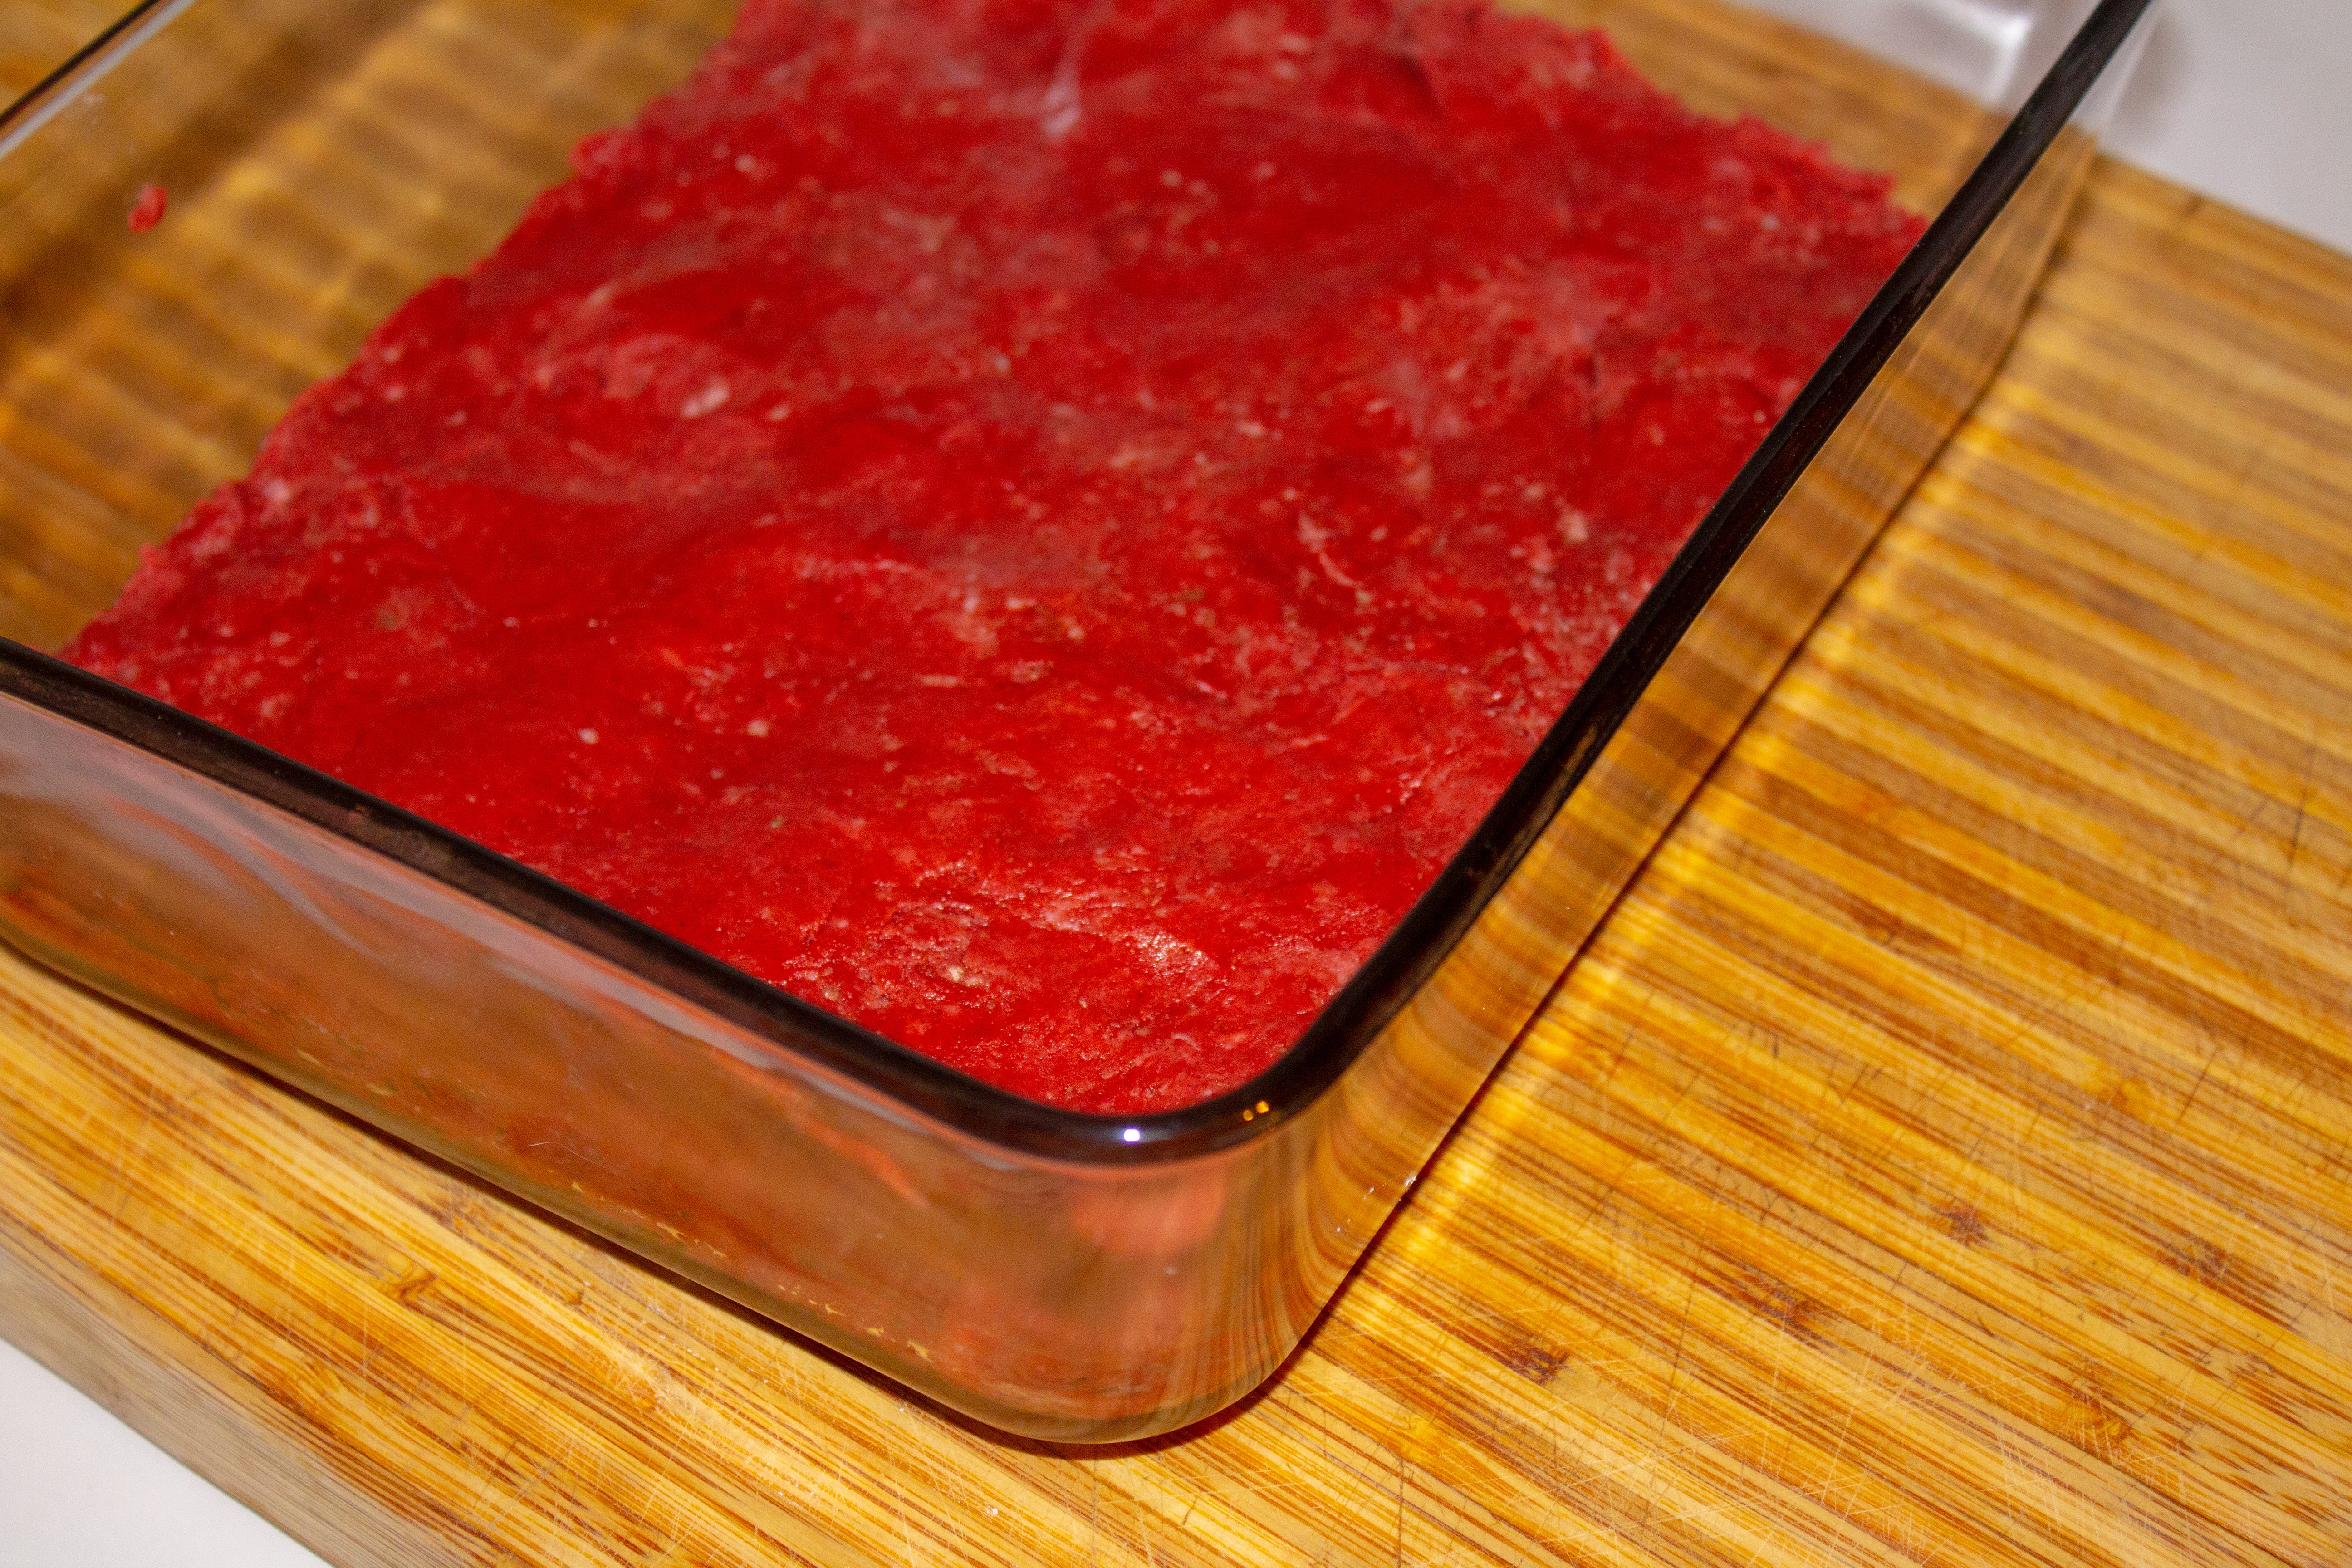 red velvet cake batter fudge in a pan